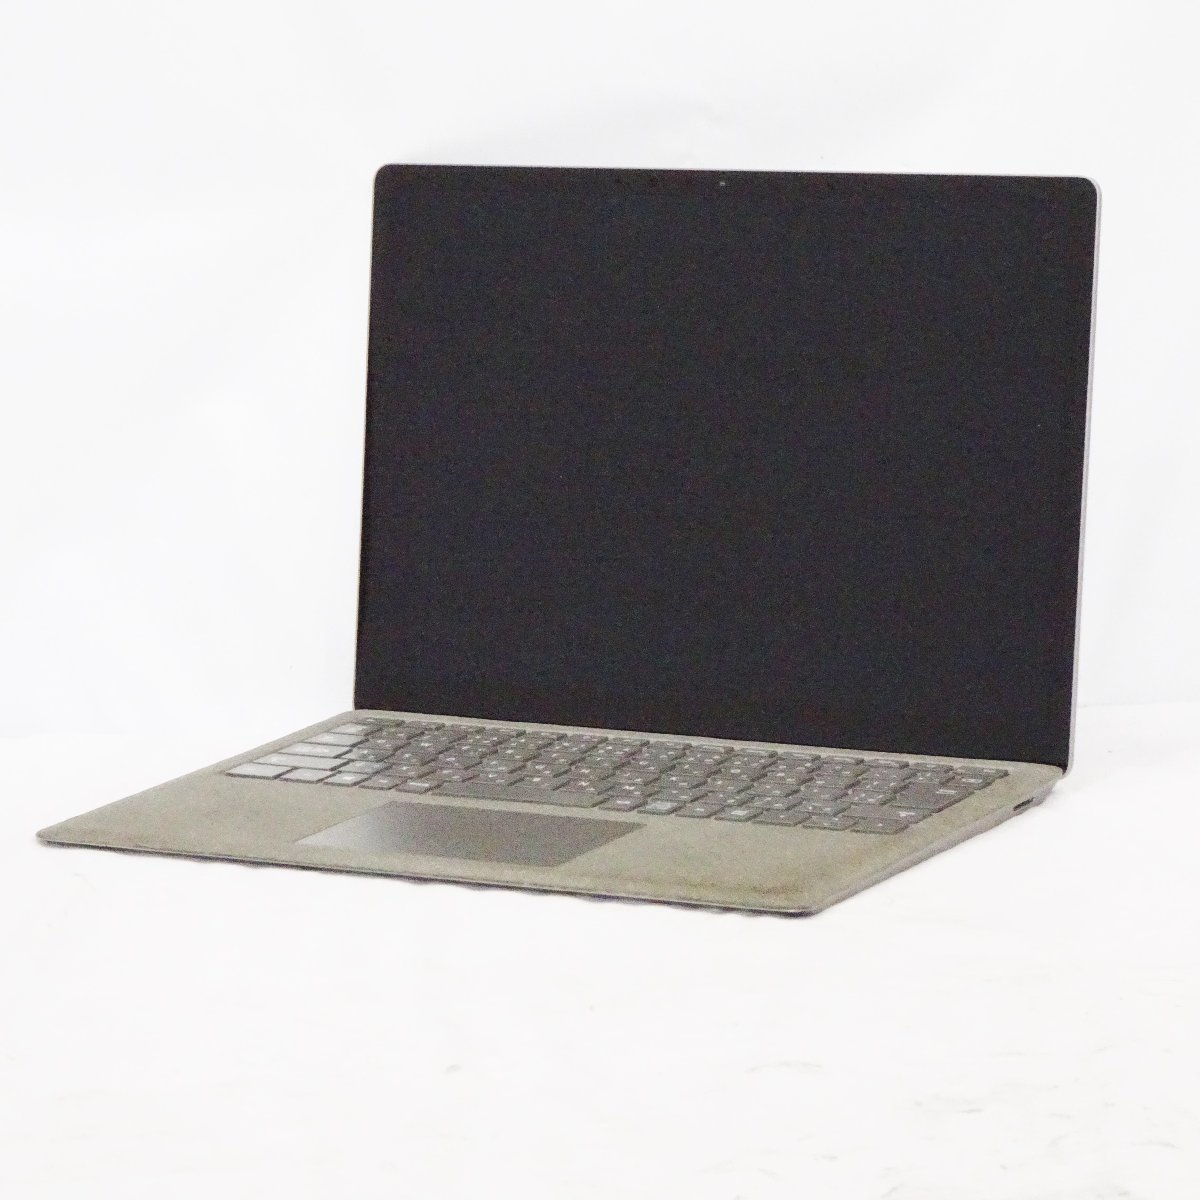 ヤフオク! -「microsoft surface laptop 2」(コンピュータ) の落札相場 ...